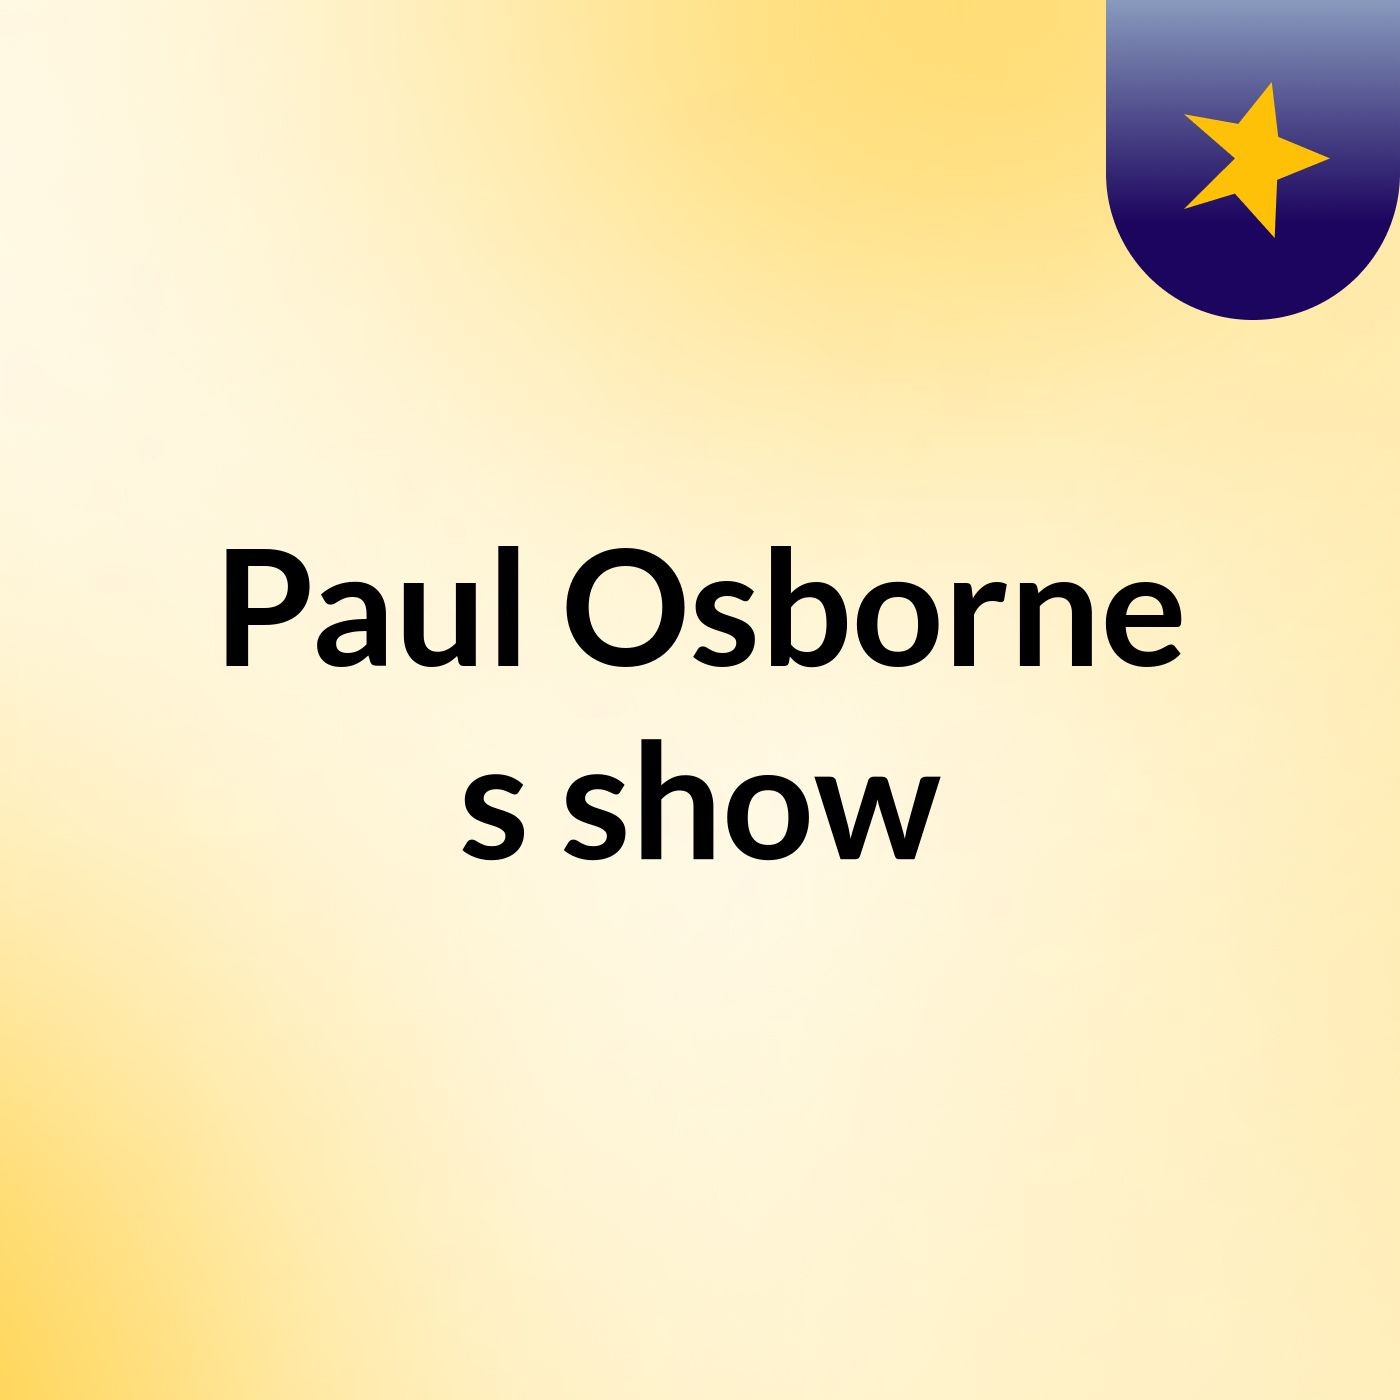 Paul Osborne's show